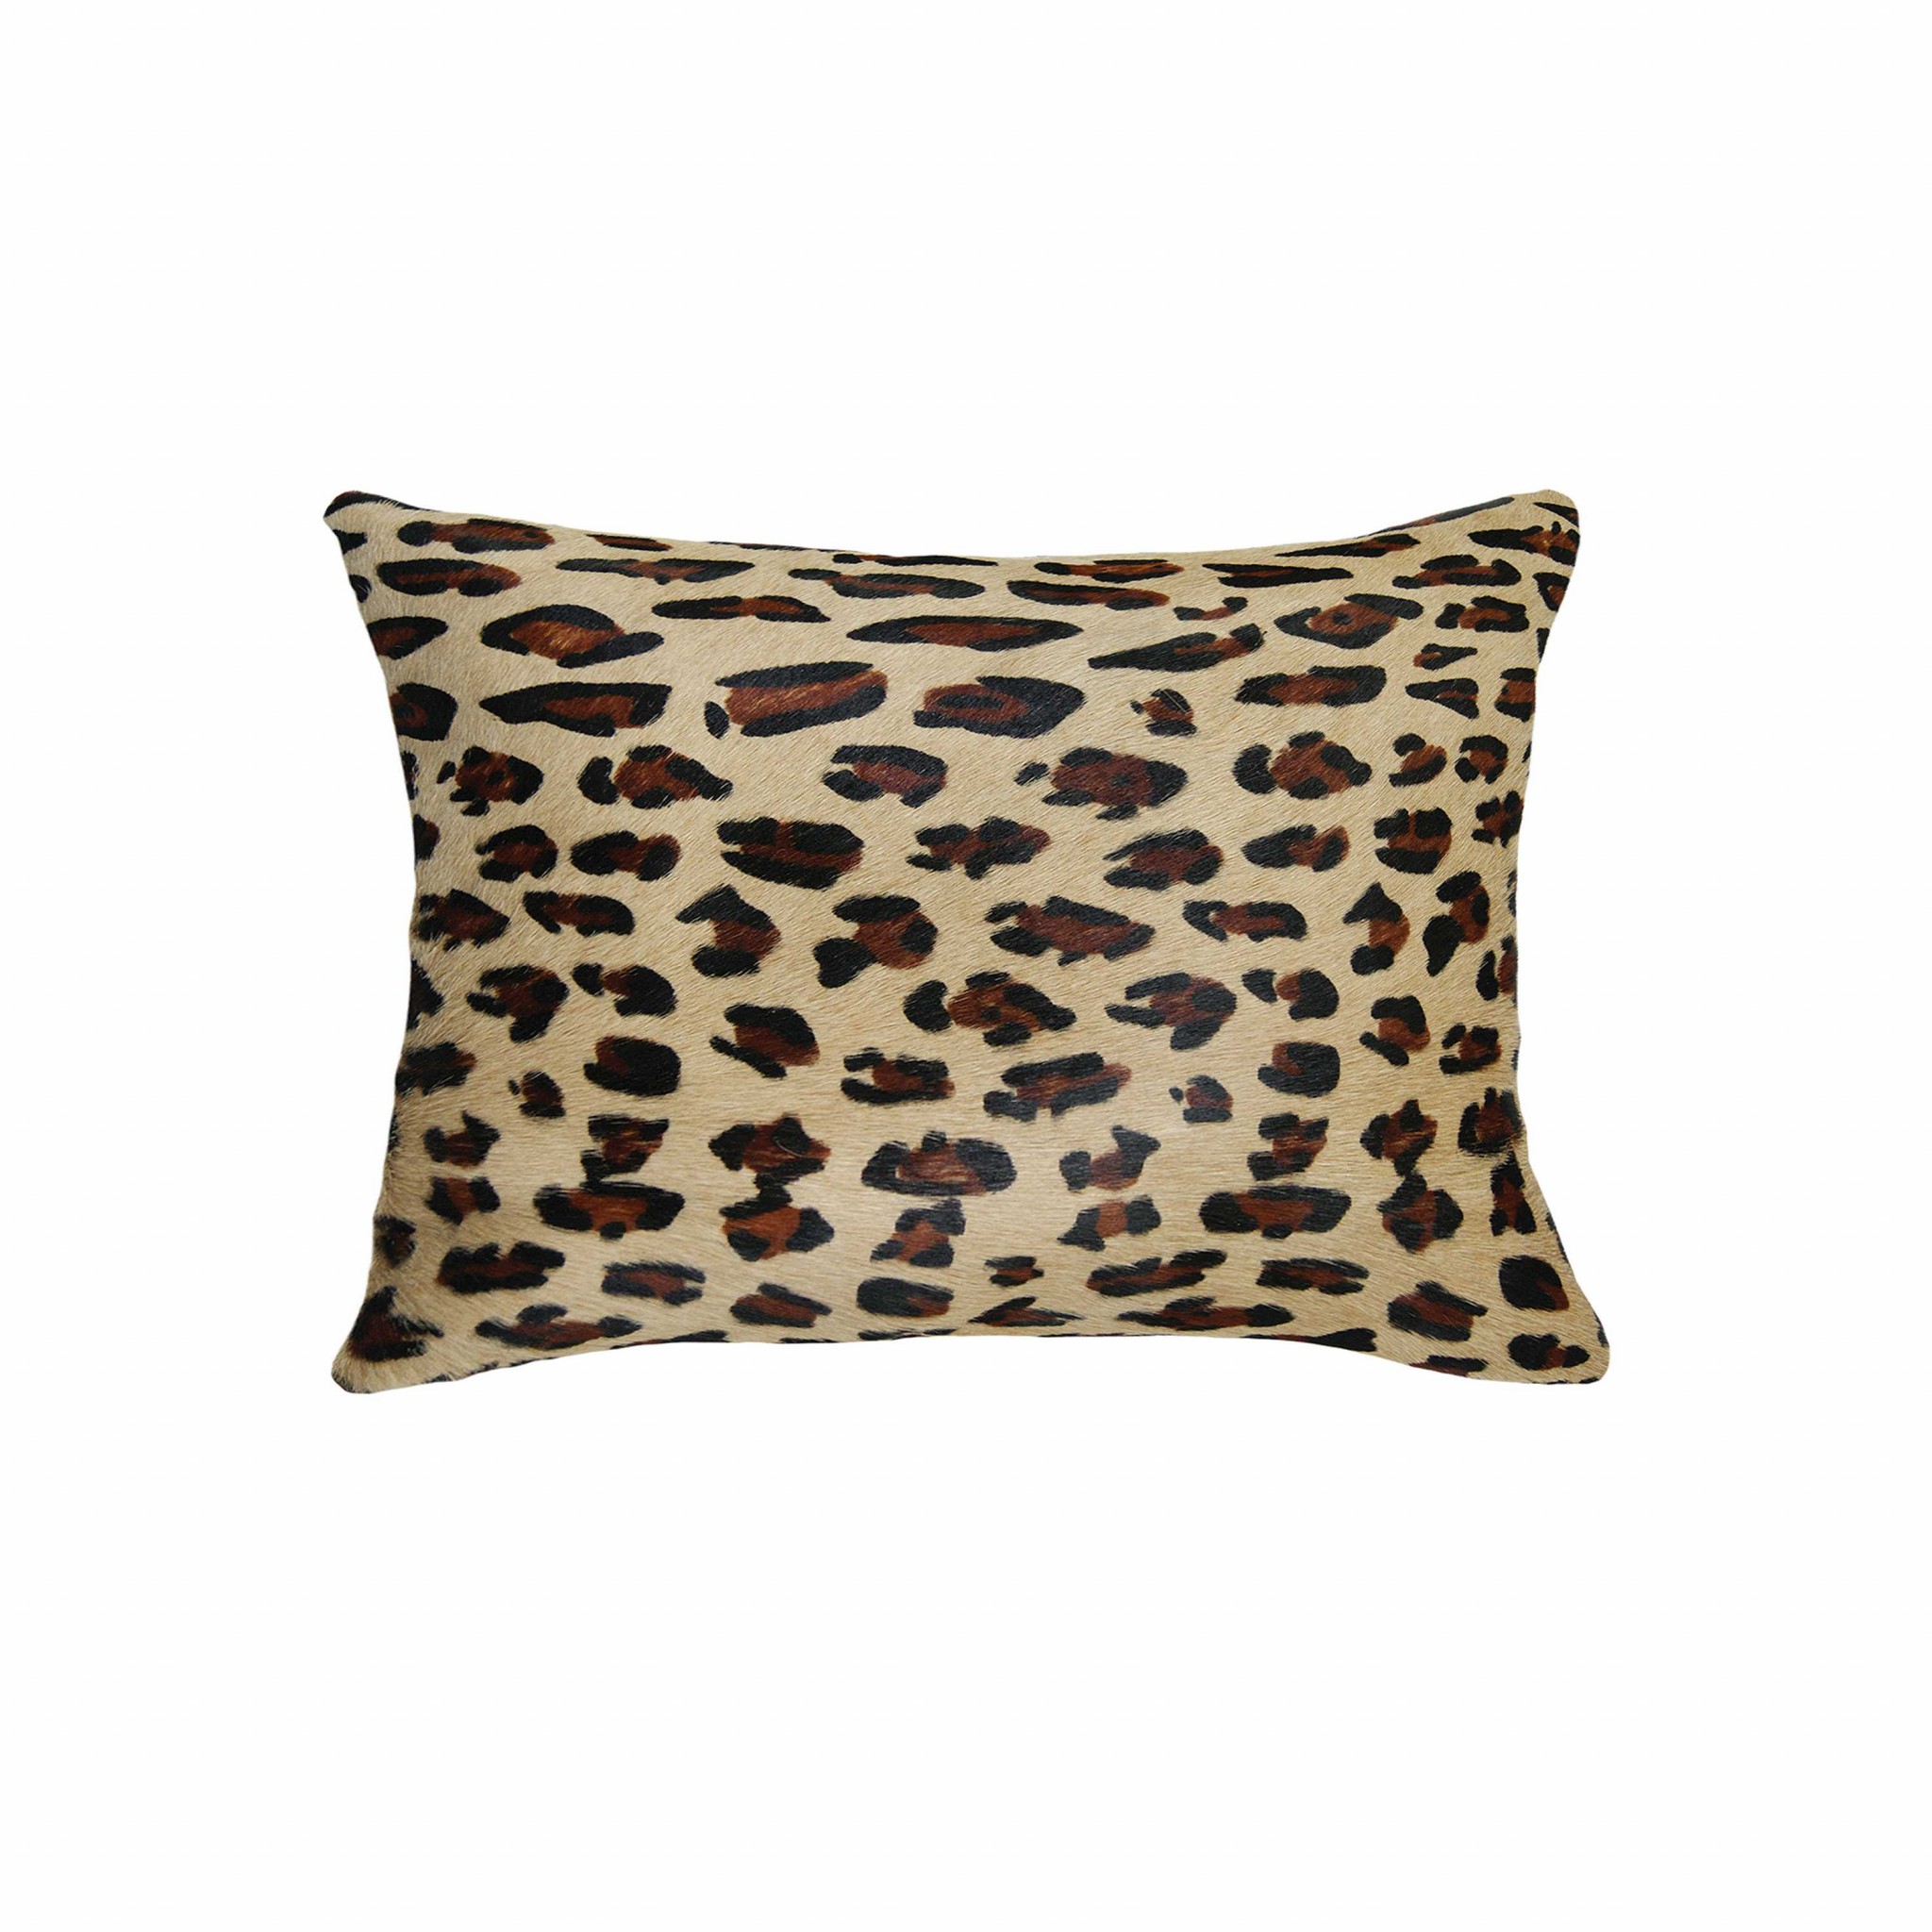 12" x 20" x 5" Leopard Cowhide - Pillow